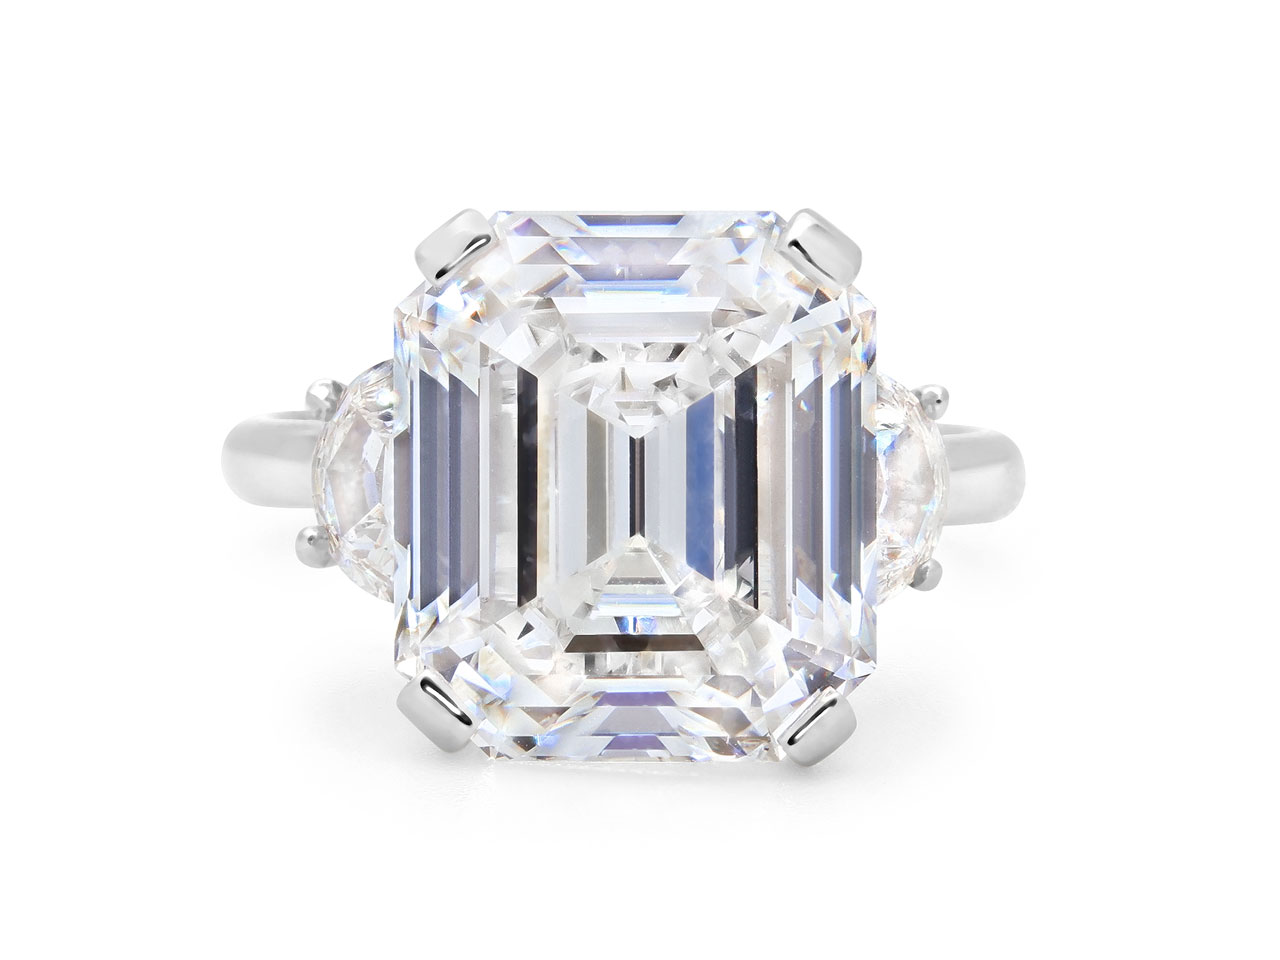 Emerald Cut Diamond Ring, 8.32 carat F/SI1, in Platinum